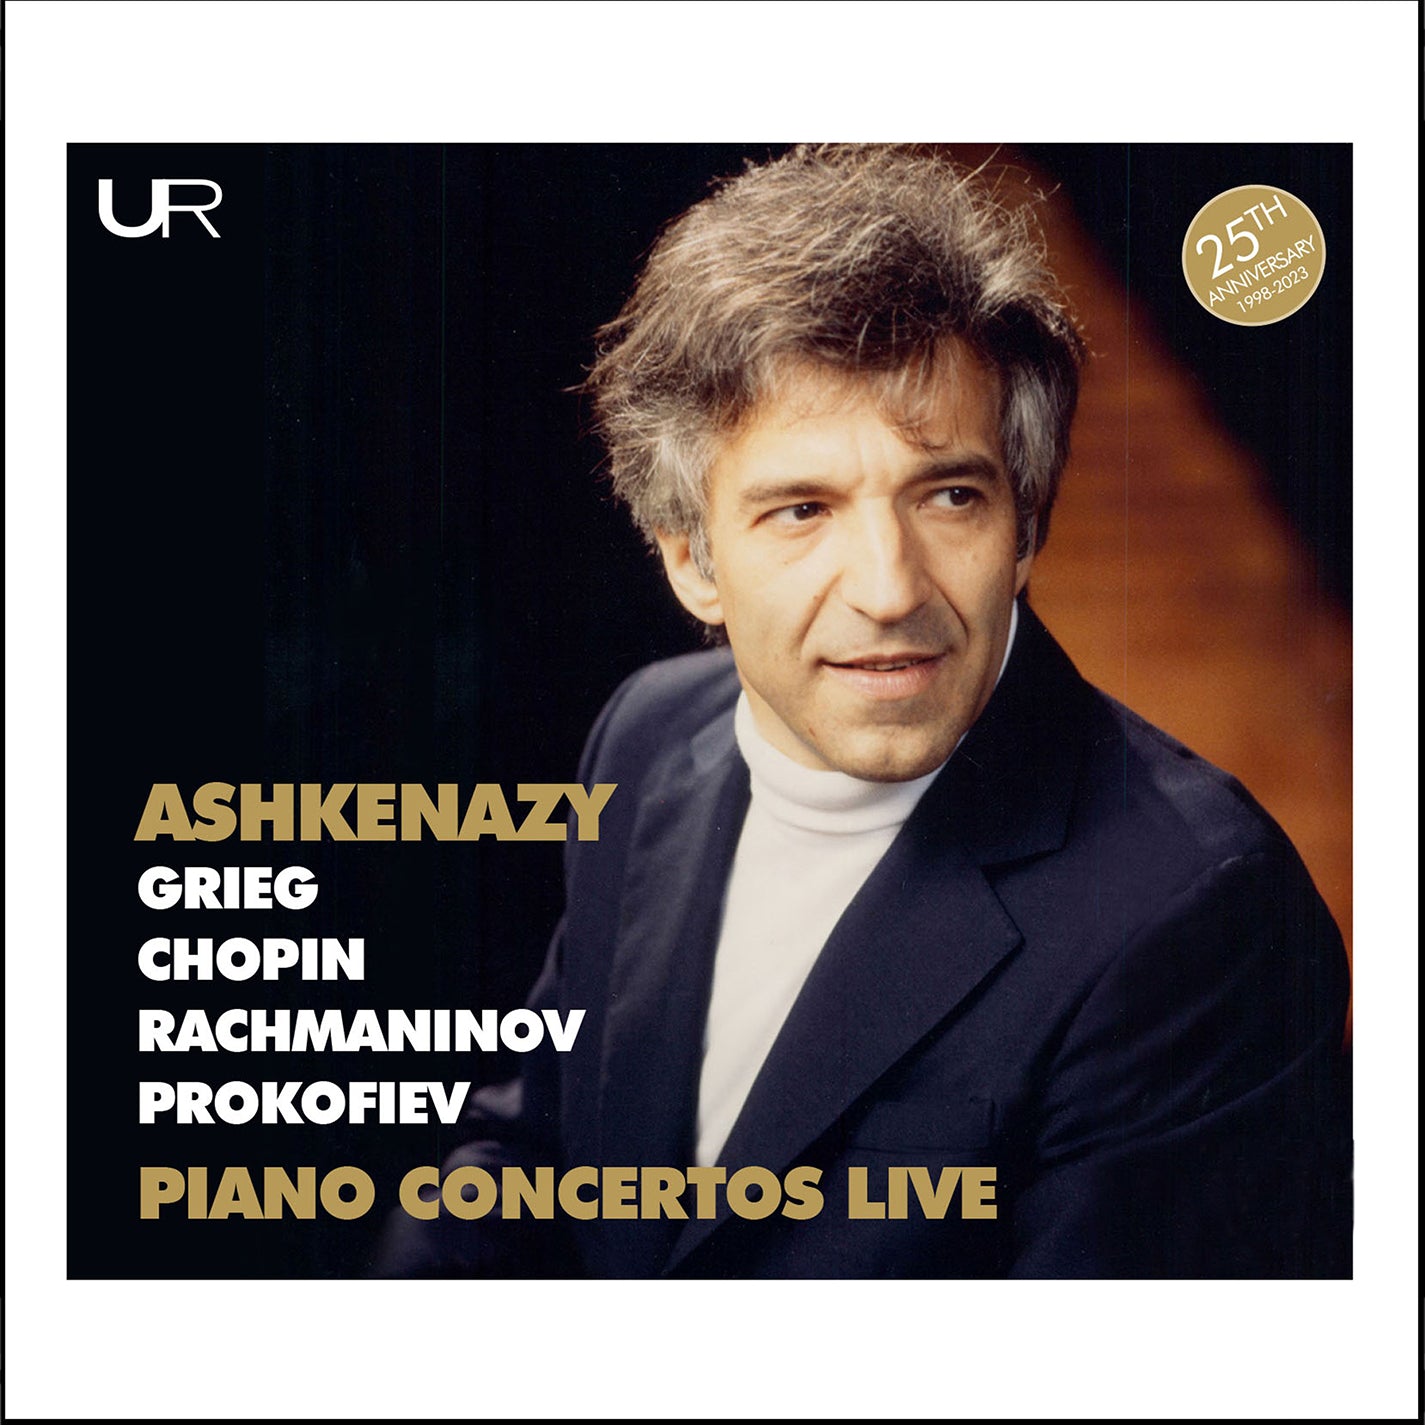 Ashkenazy: Grieg, Chopin, Rachmaninoff & Prokofiev Piano Concertos Live